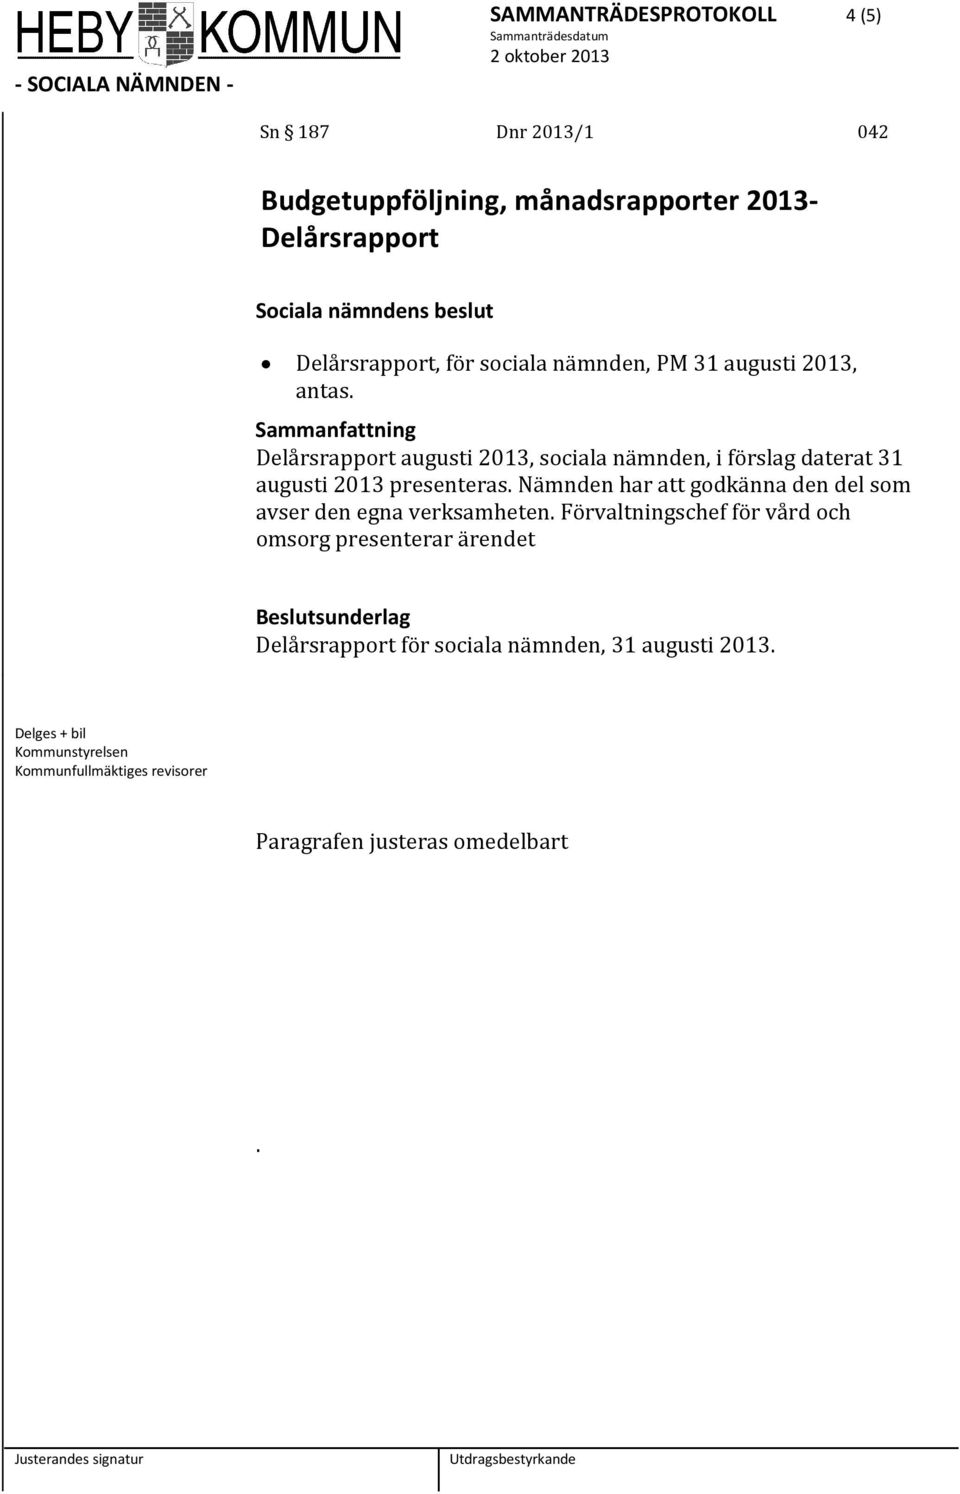 Delårsrapport augusti 2013, sociala nämnden, i förslag daterat 31 augusti 2013 presenteras.